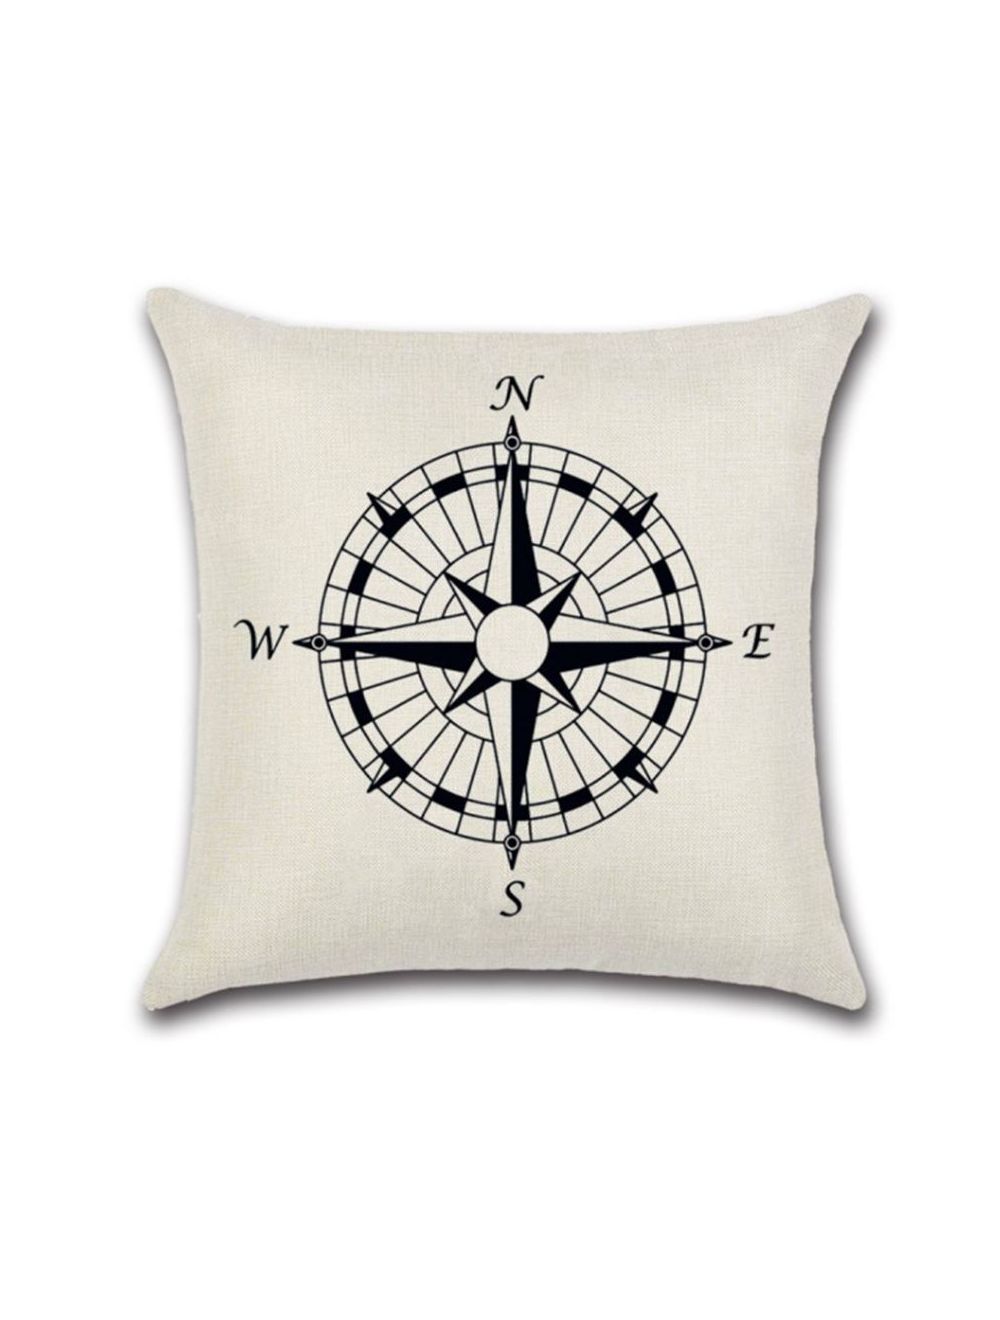 Rishahome Compass Printed Cushion Cover 45x45 cm-9C8Q0004